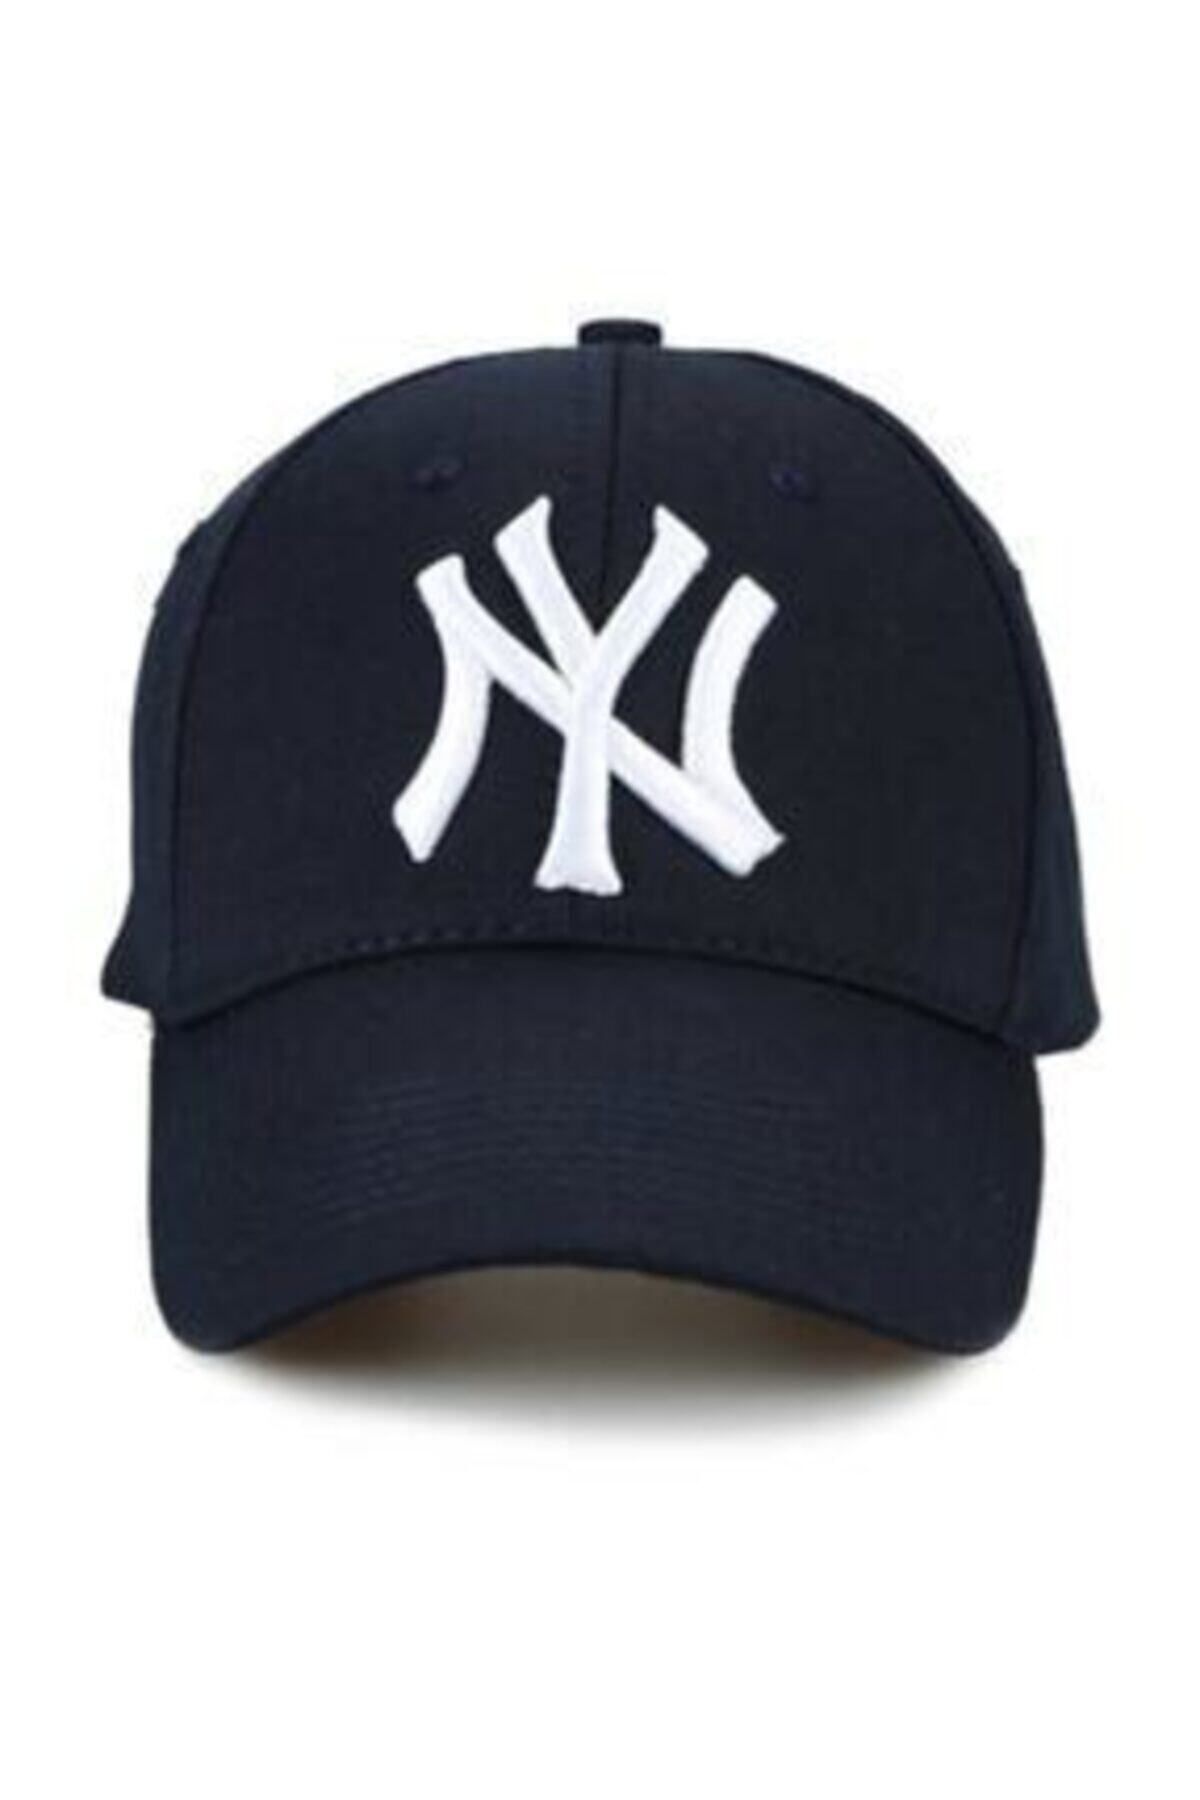 Genel Markalar Ny New York Yankees Şapka Lacivert